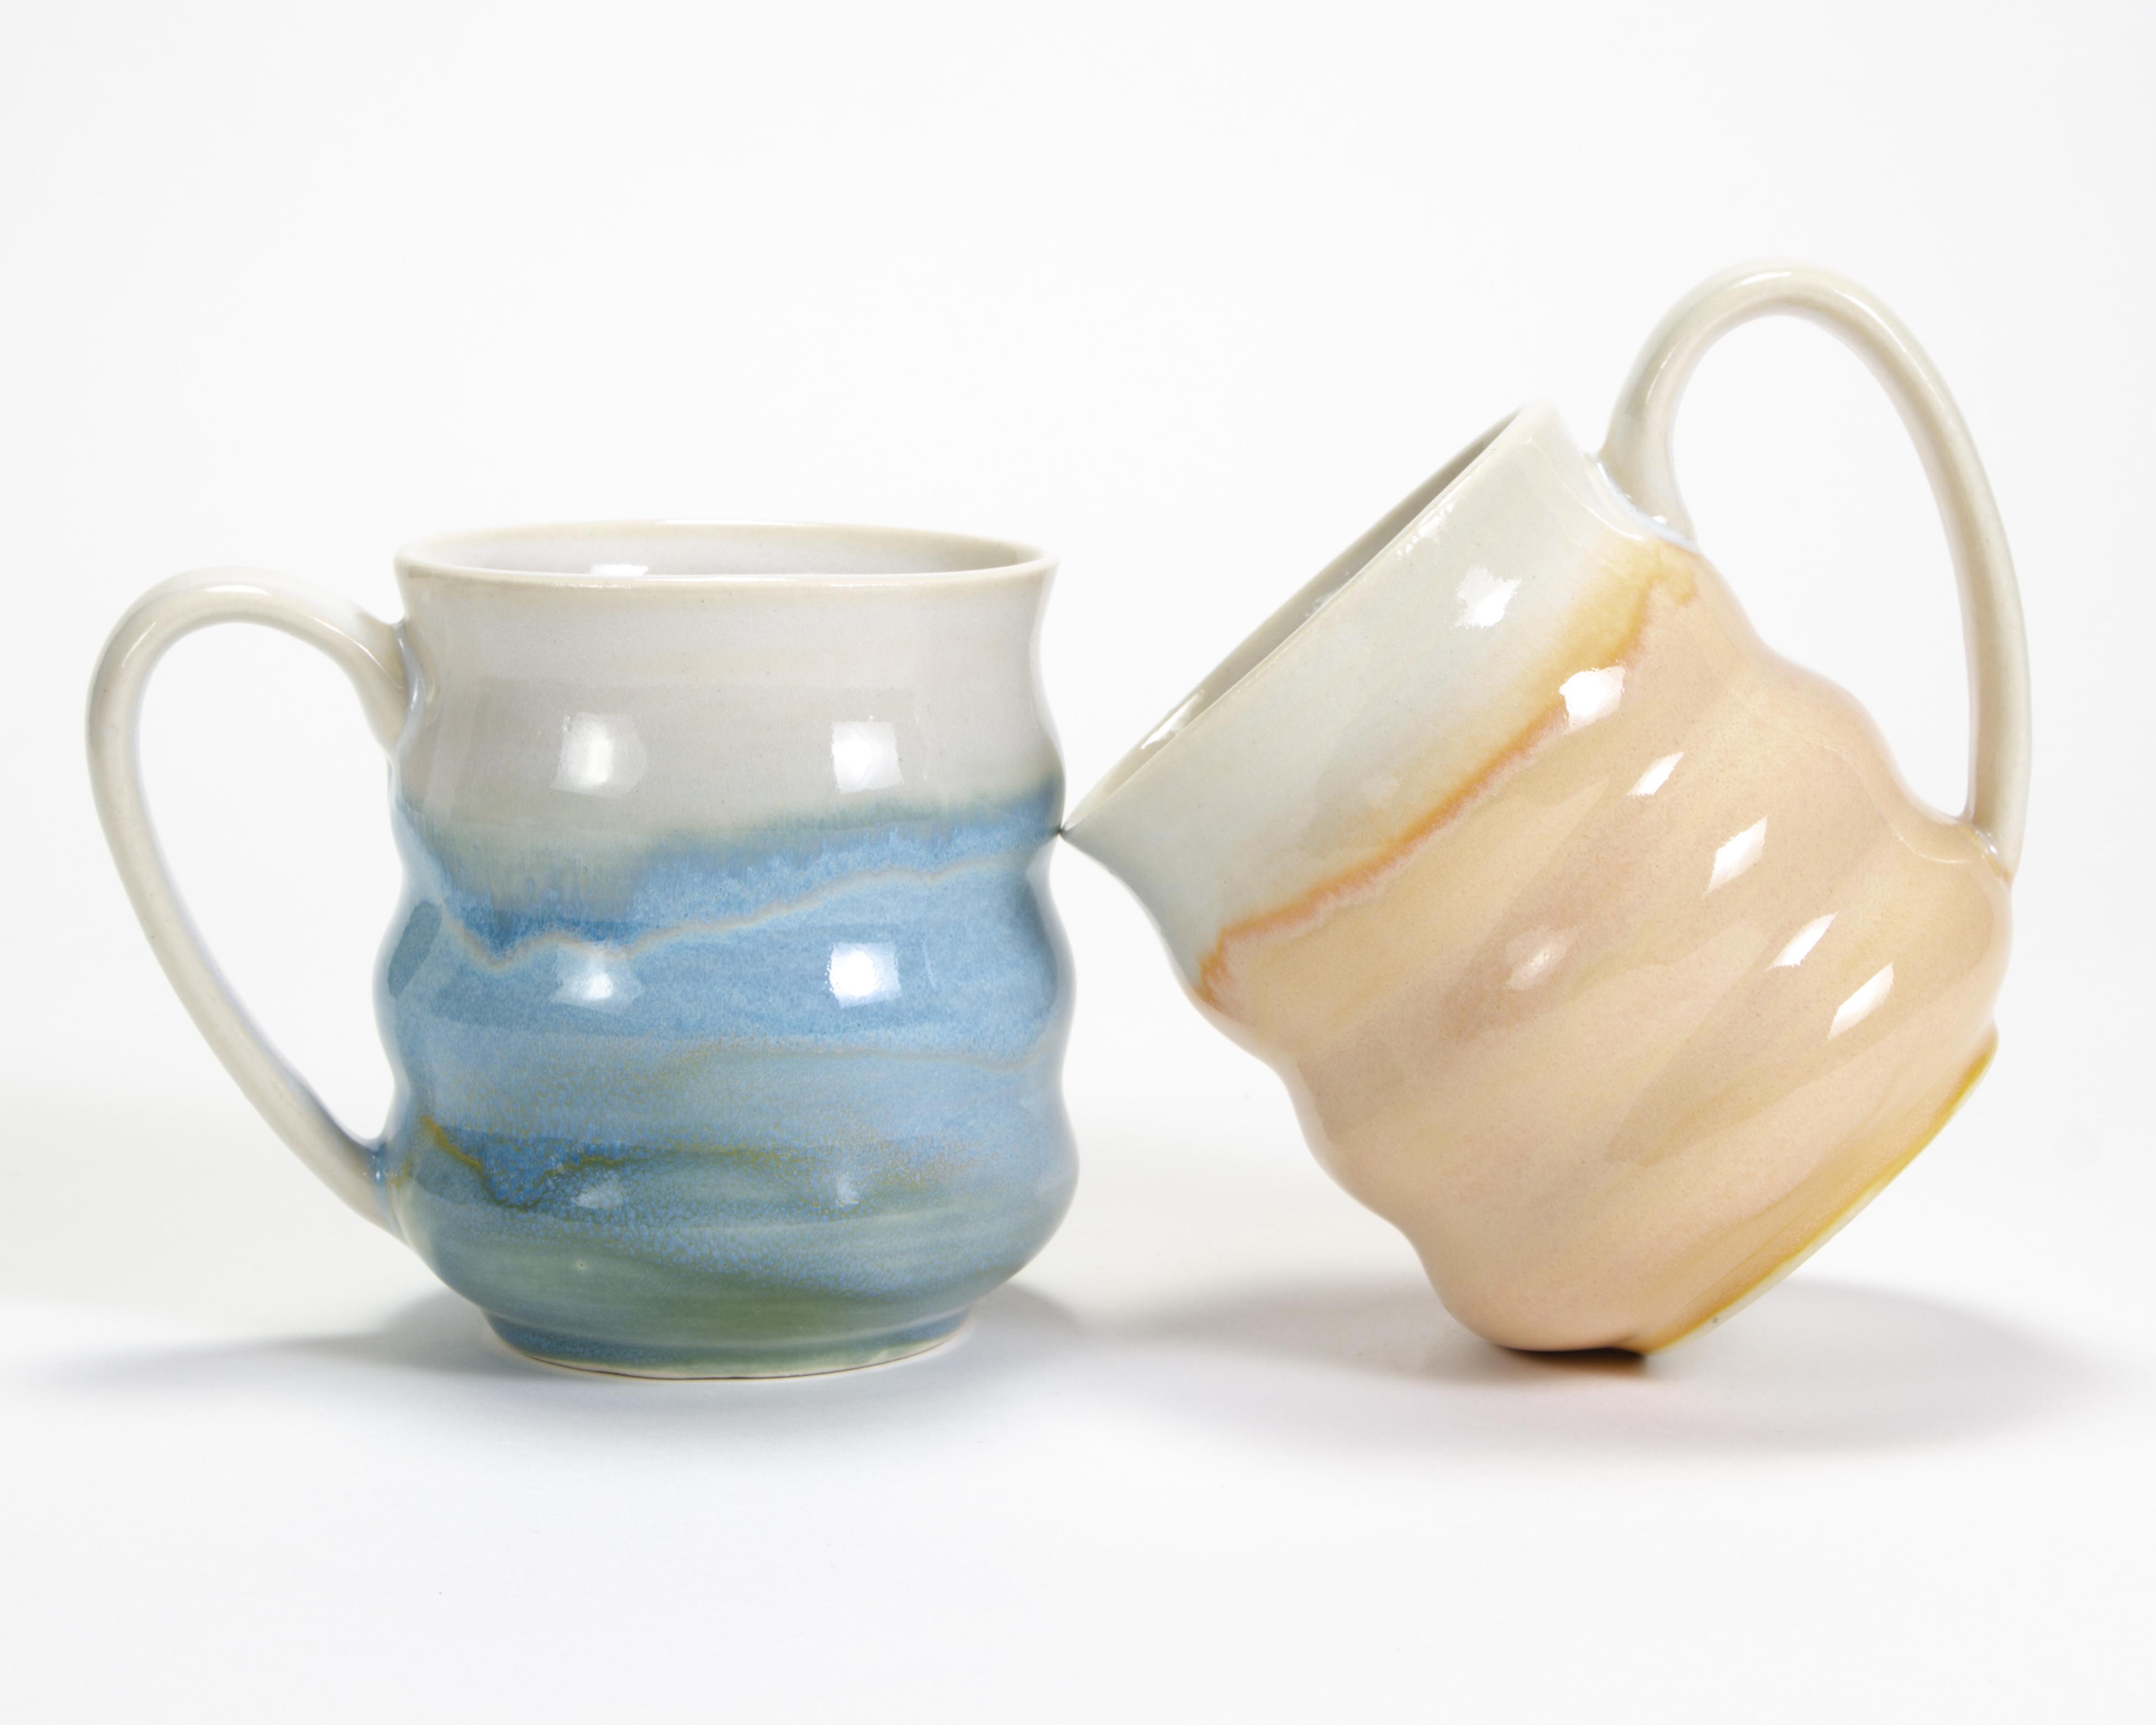 ccsa-2019-wavy-mugs-3-crop.jpg